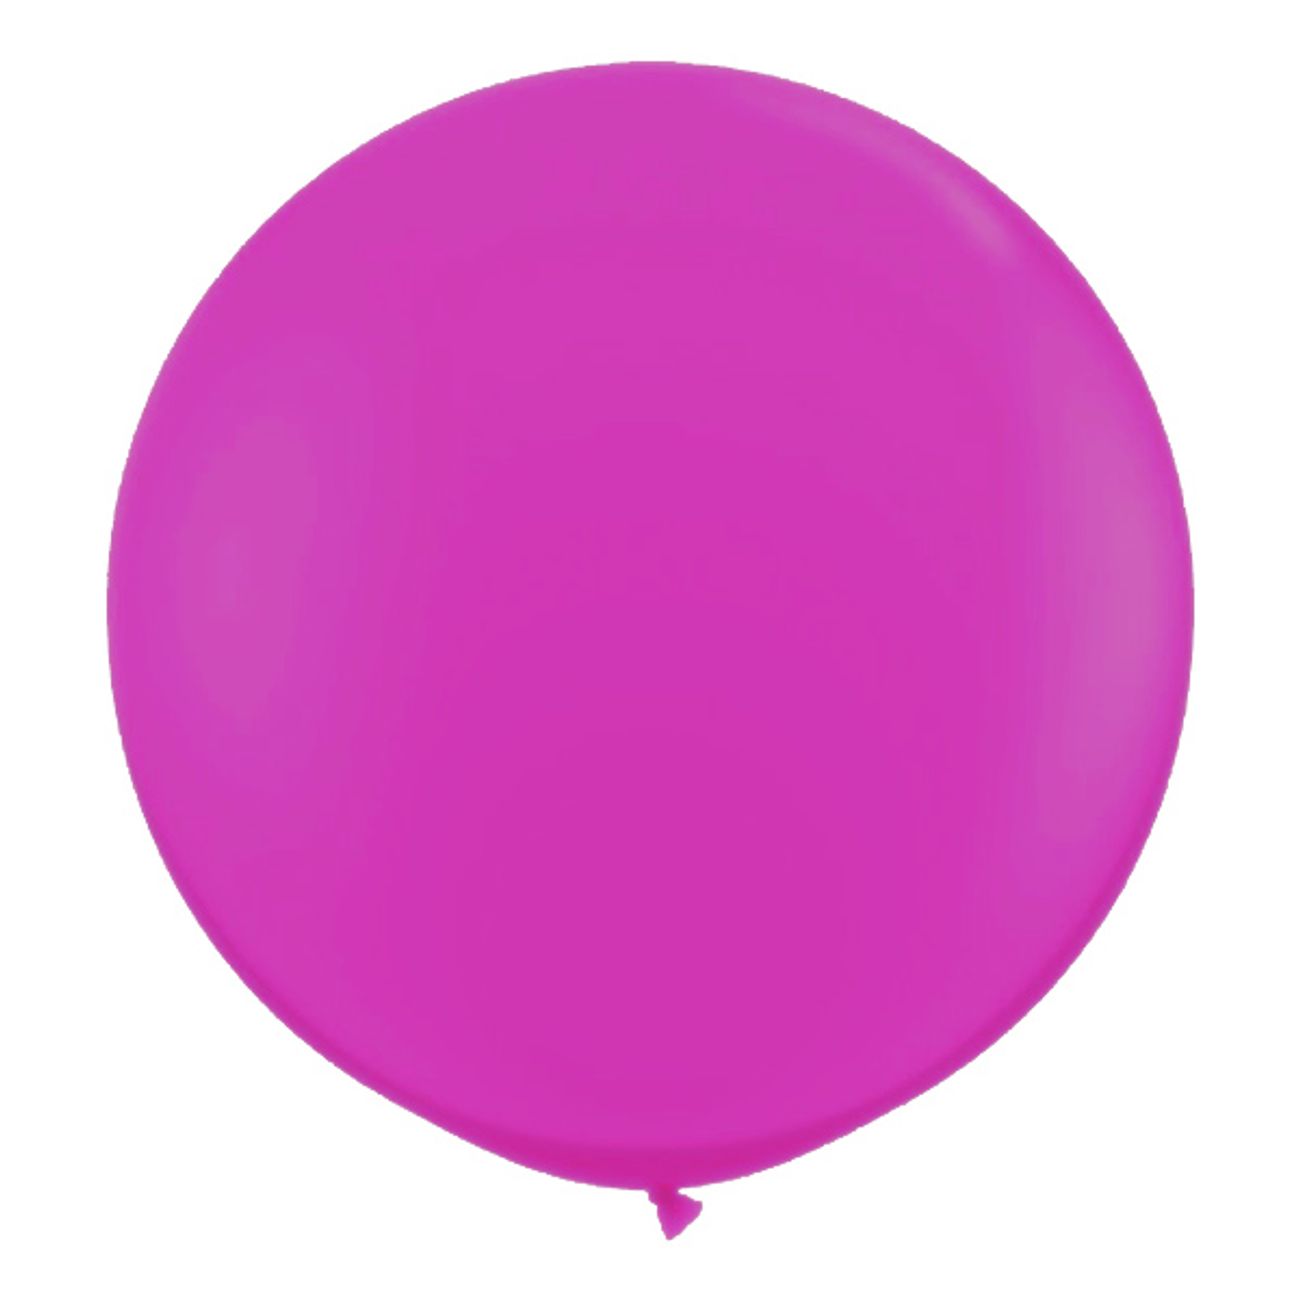 jatteballong-magenta-1